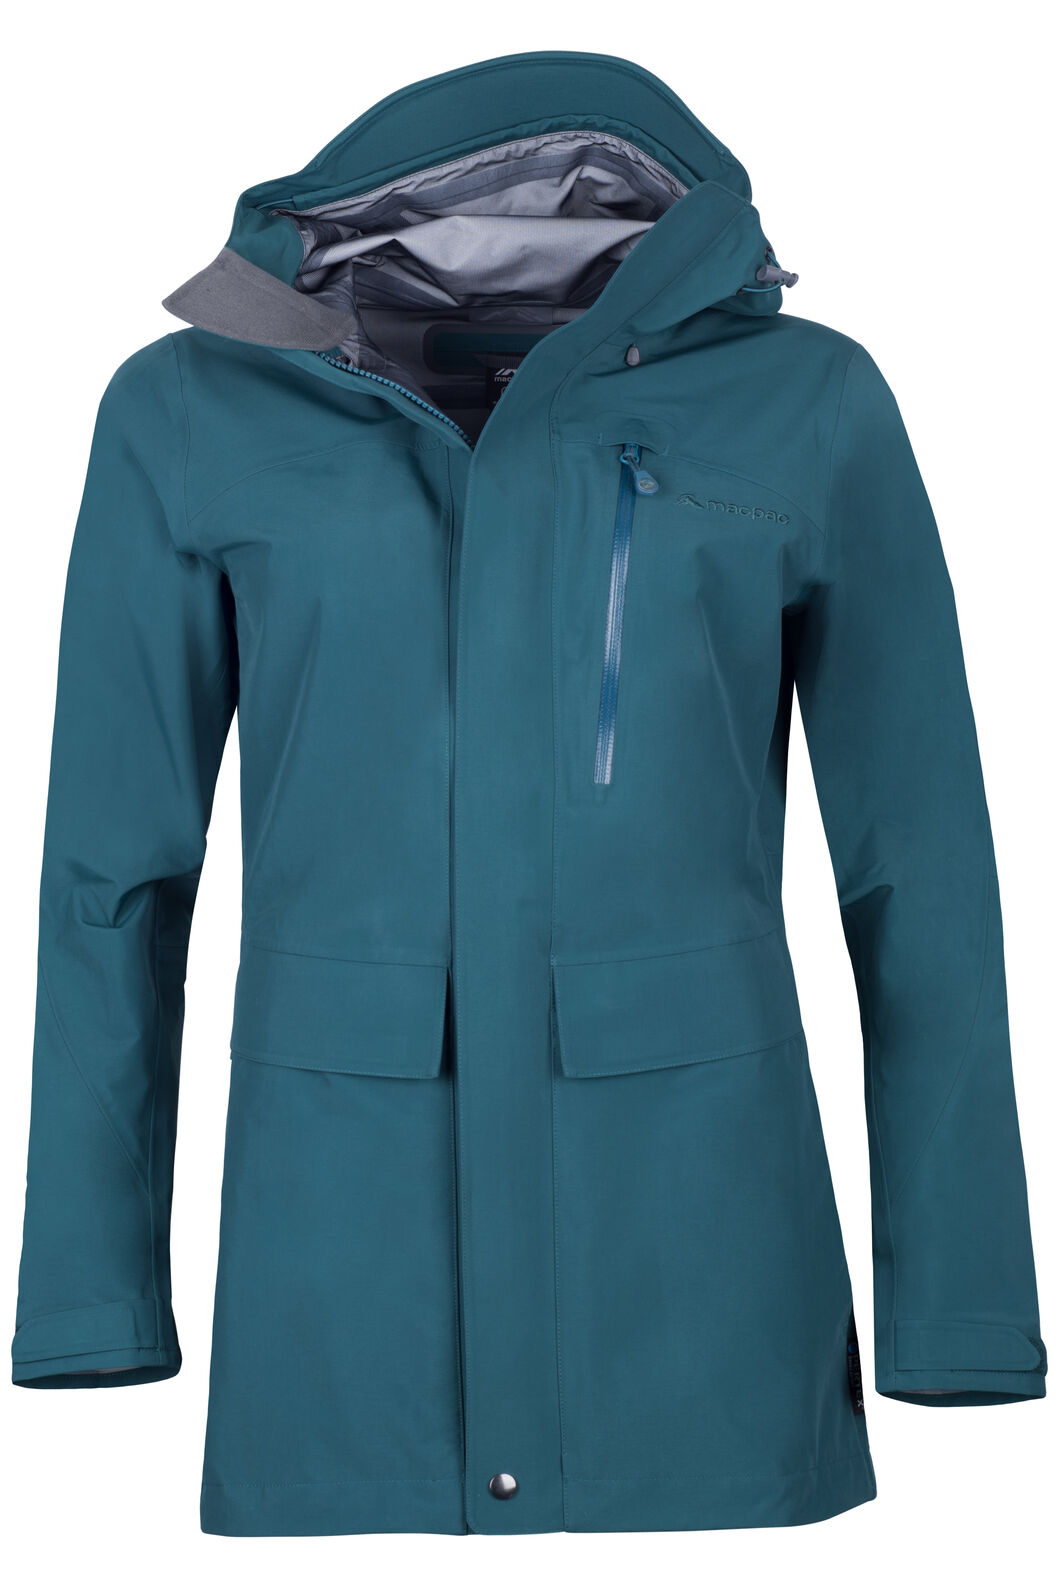 Macpac Women's Resolution Pertex® Rain Jacket | Macpac